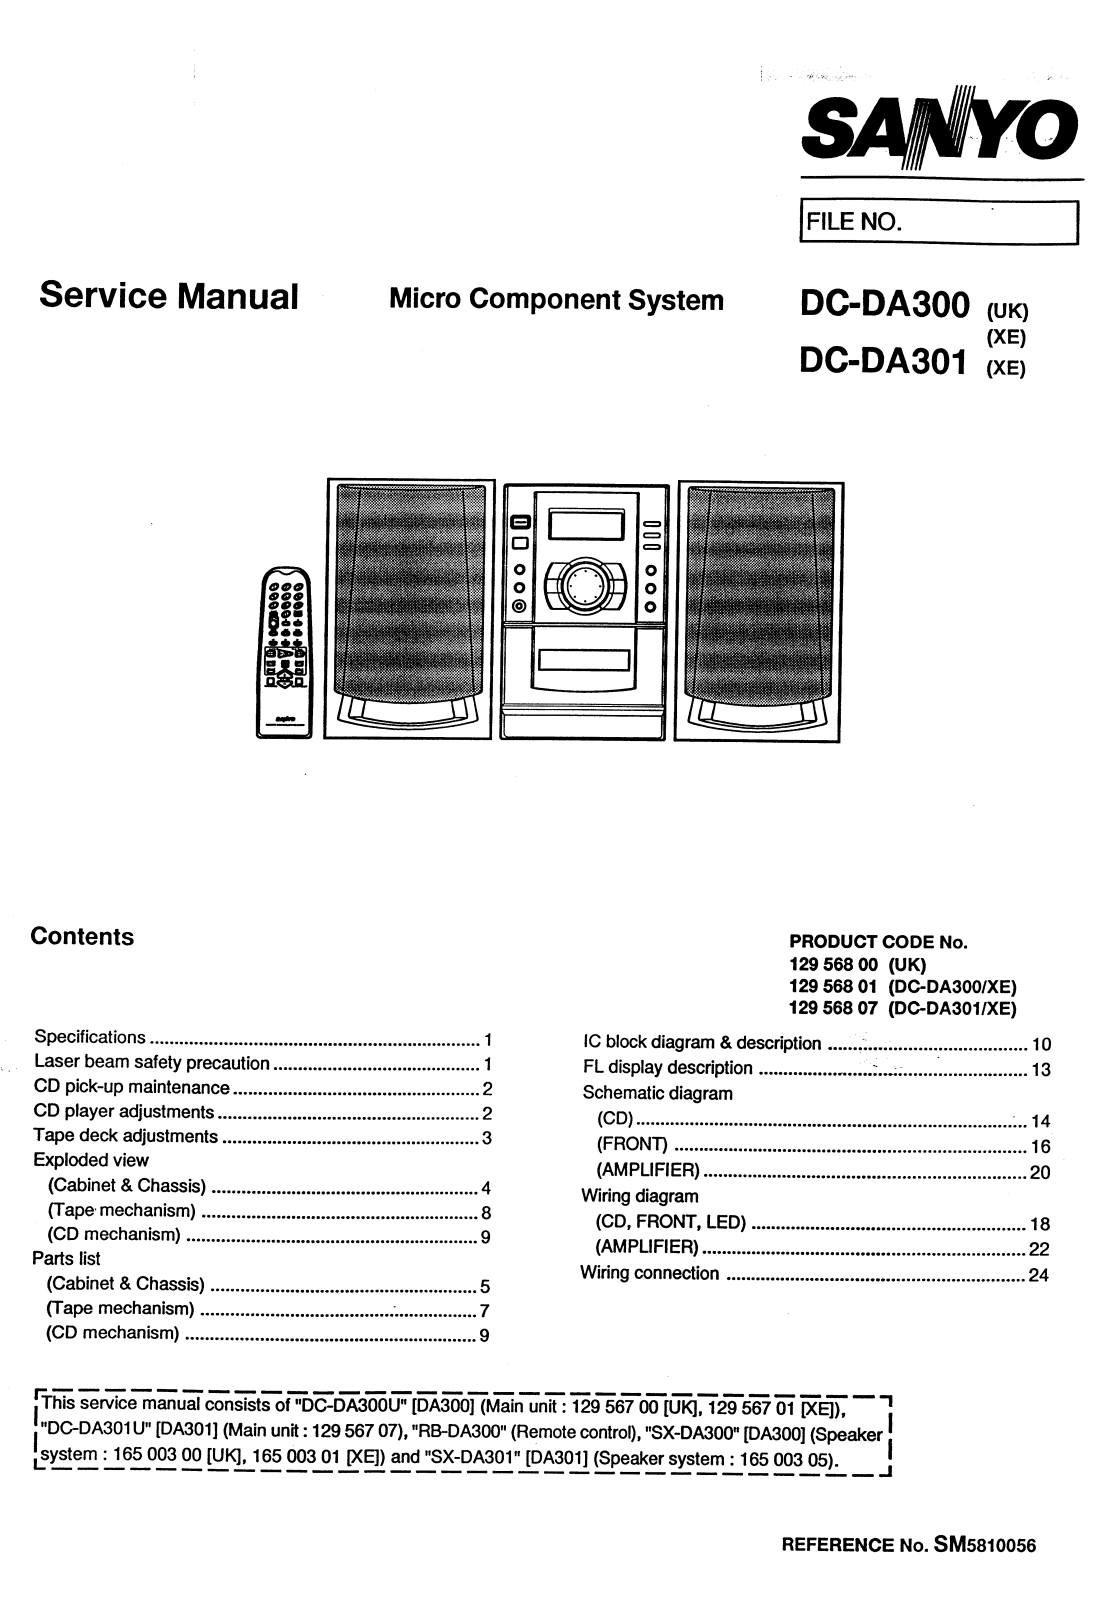 SANYO DC DA 300, DC DA 301 Service Manual